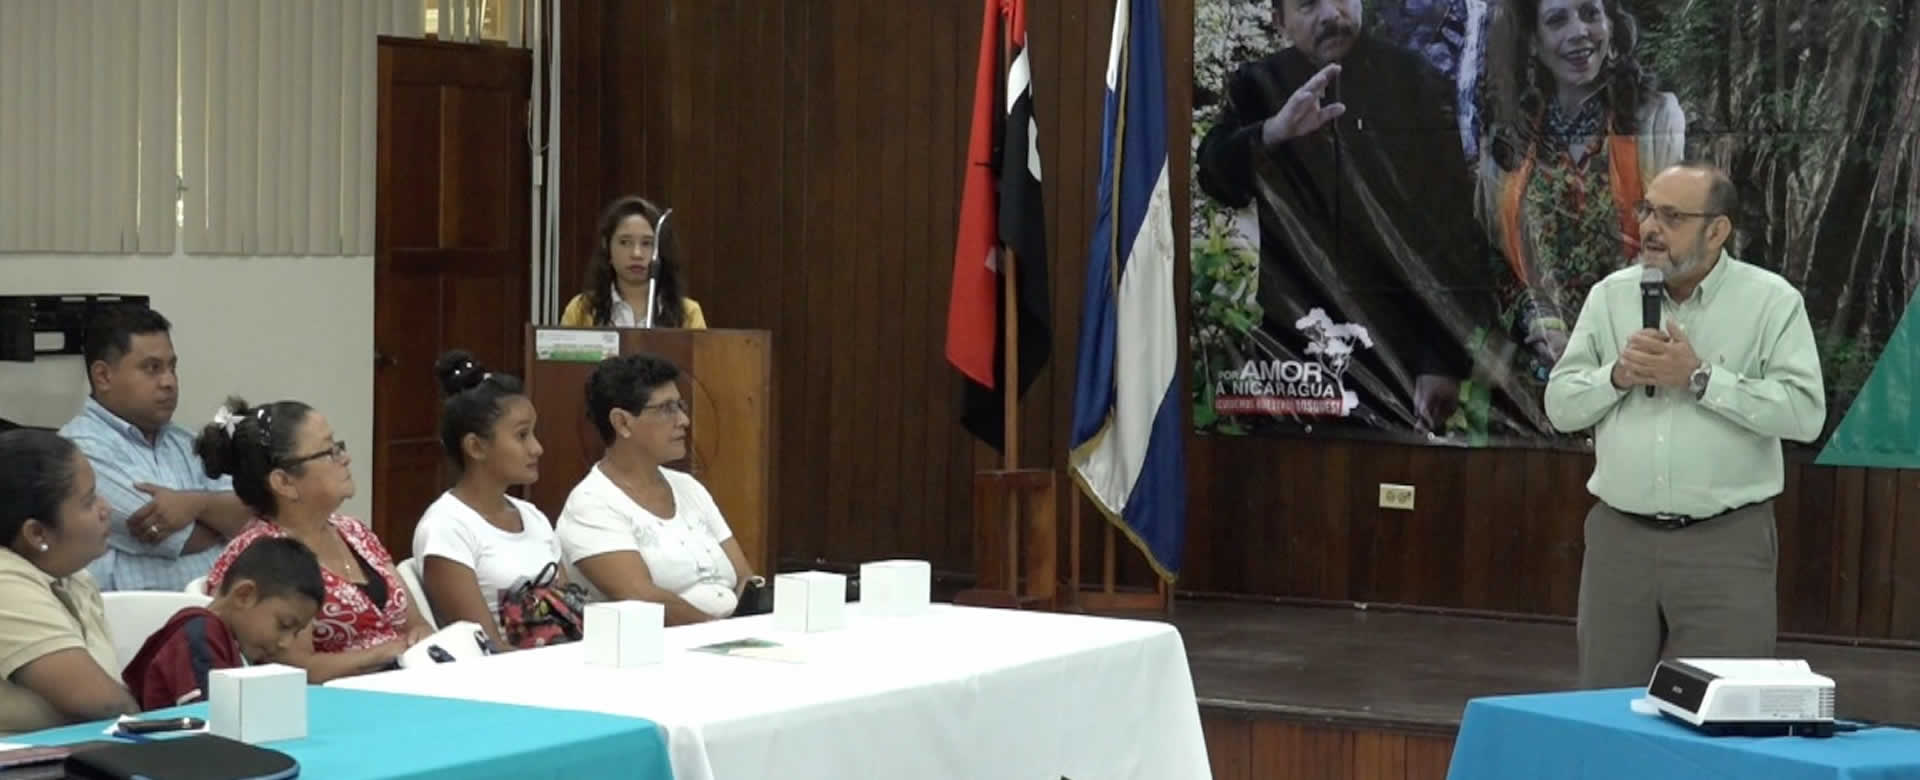 Migración y Extranjería brinda información de la mujer que atacó a sacerdote en Catedral de Managua